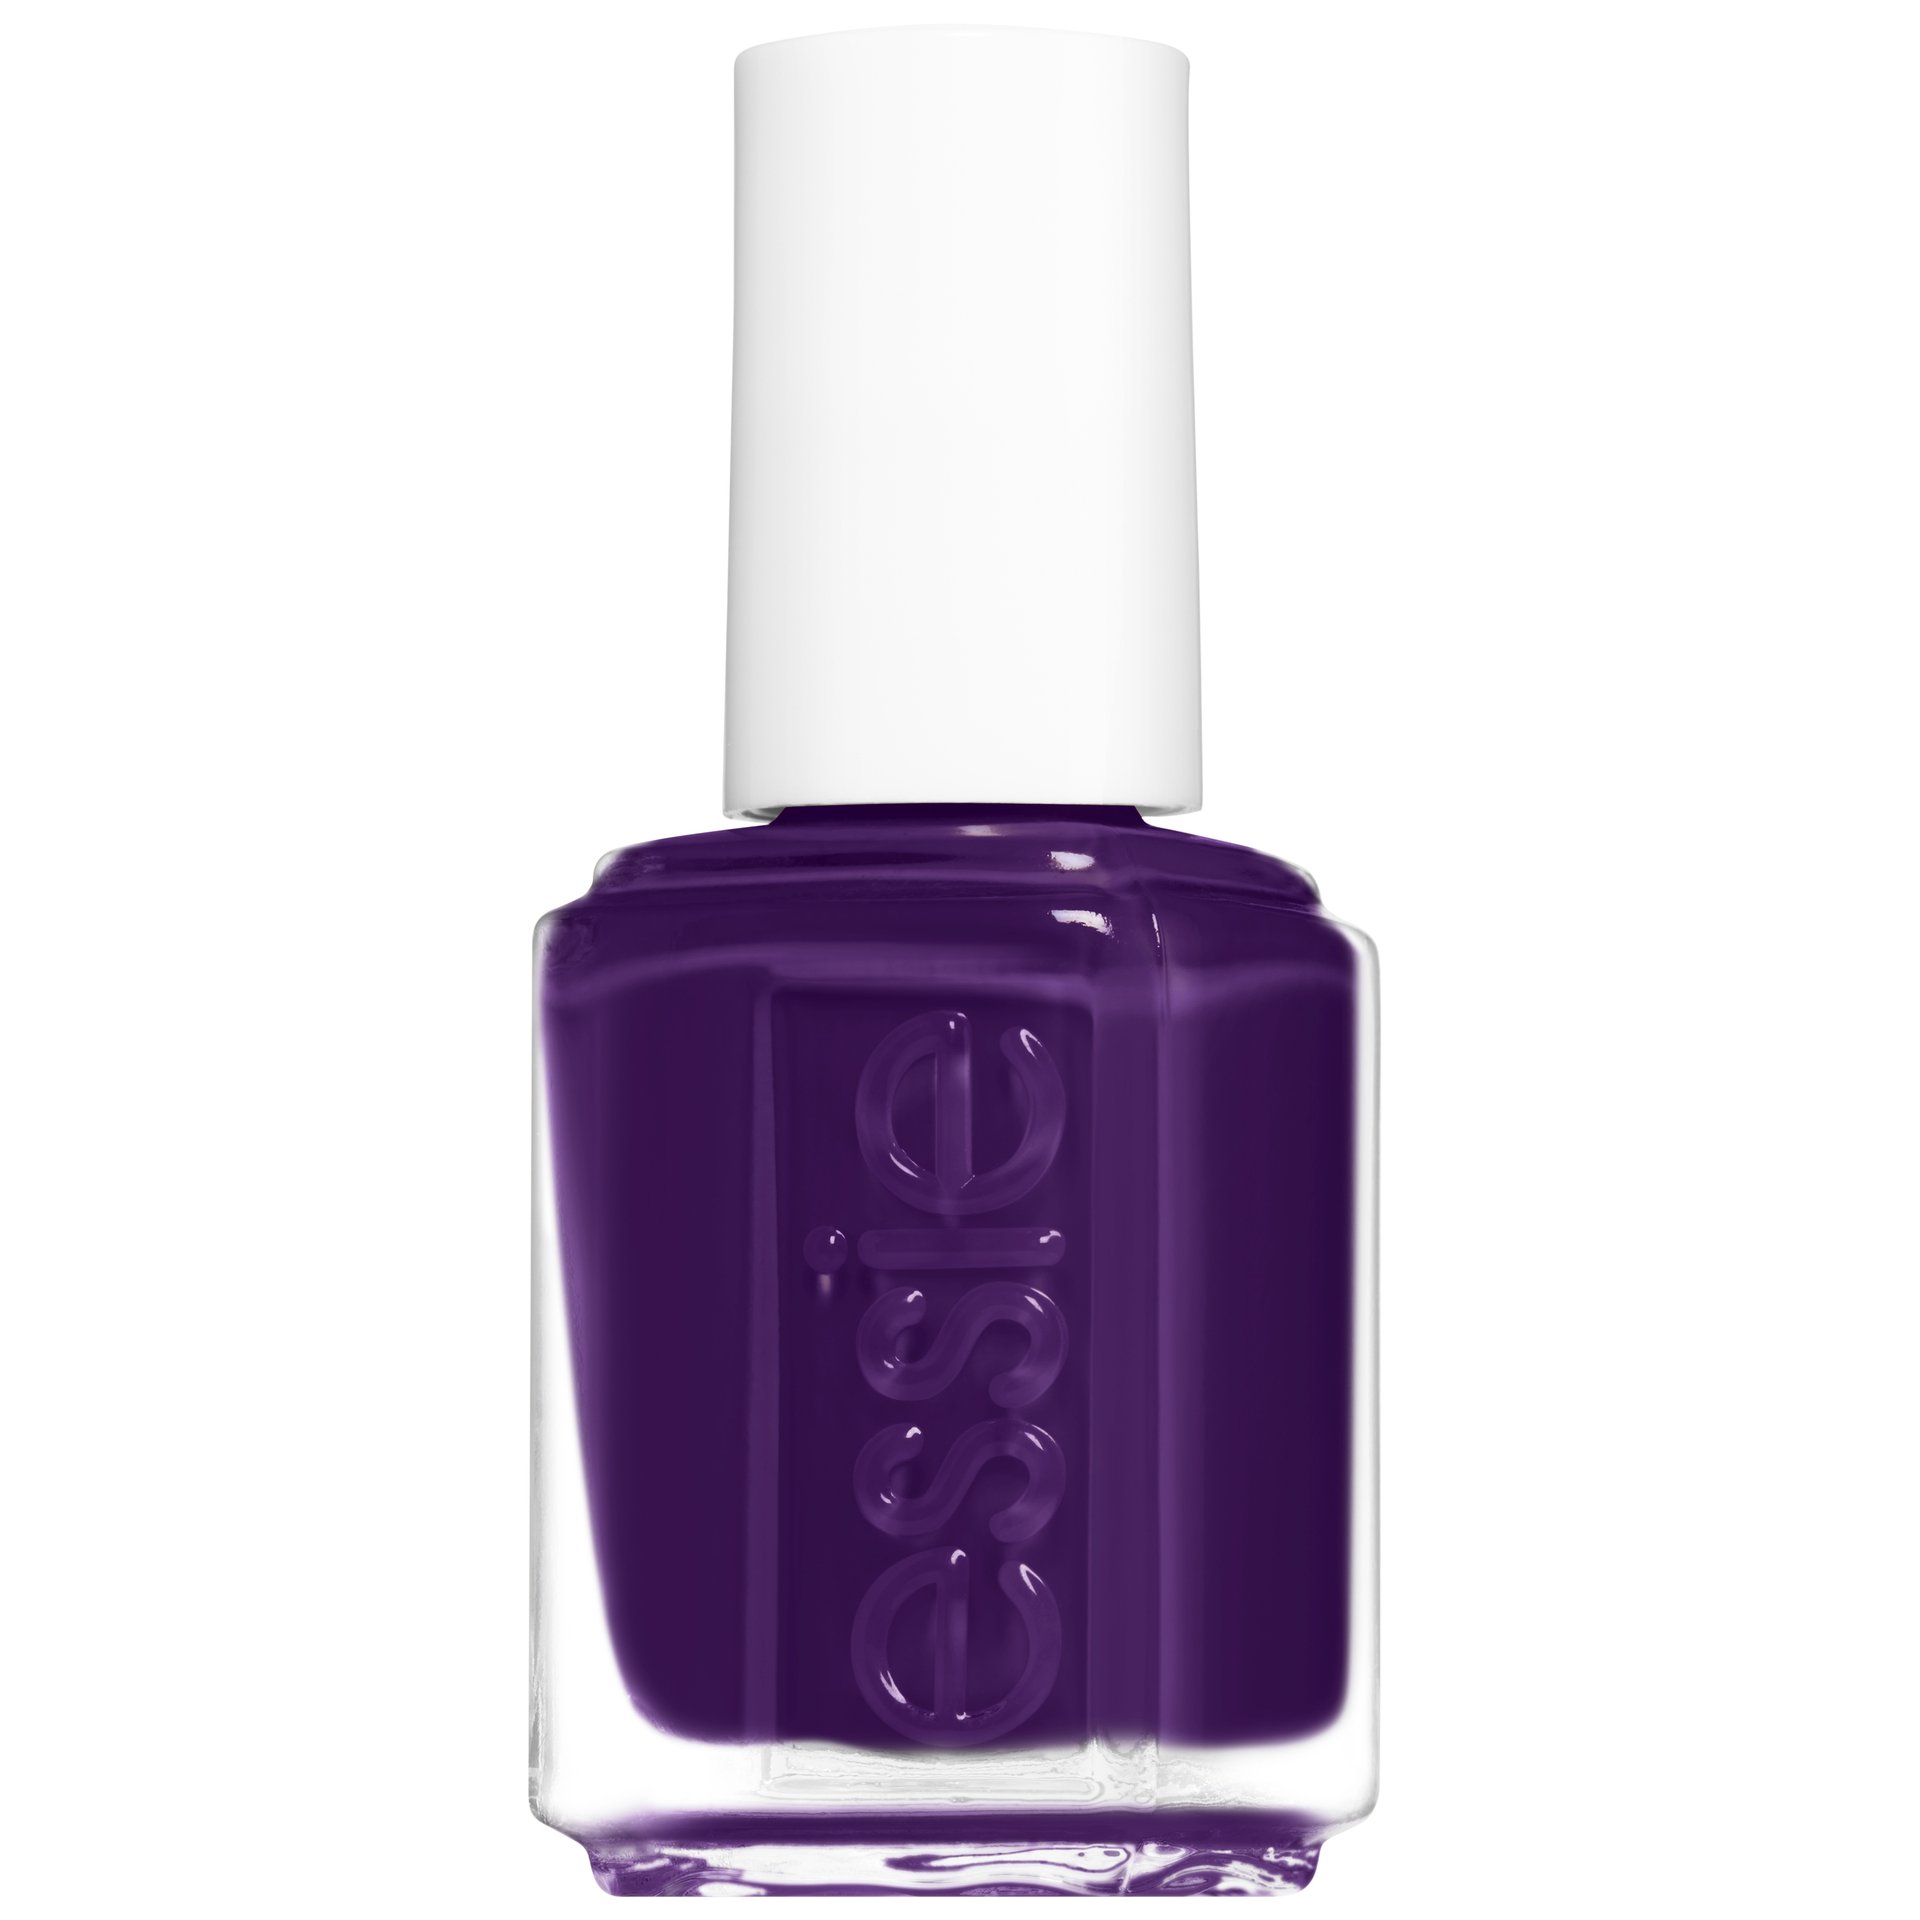 Sights On Nightlight – Plum Purple Nail Polish – essie